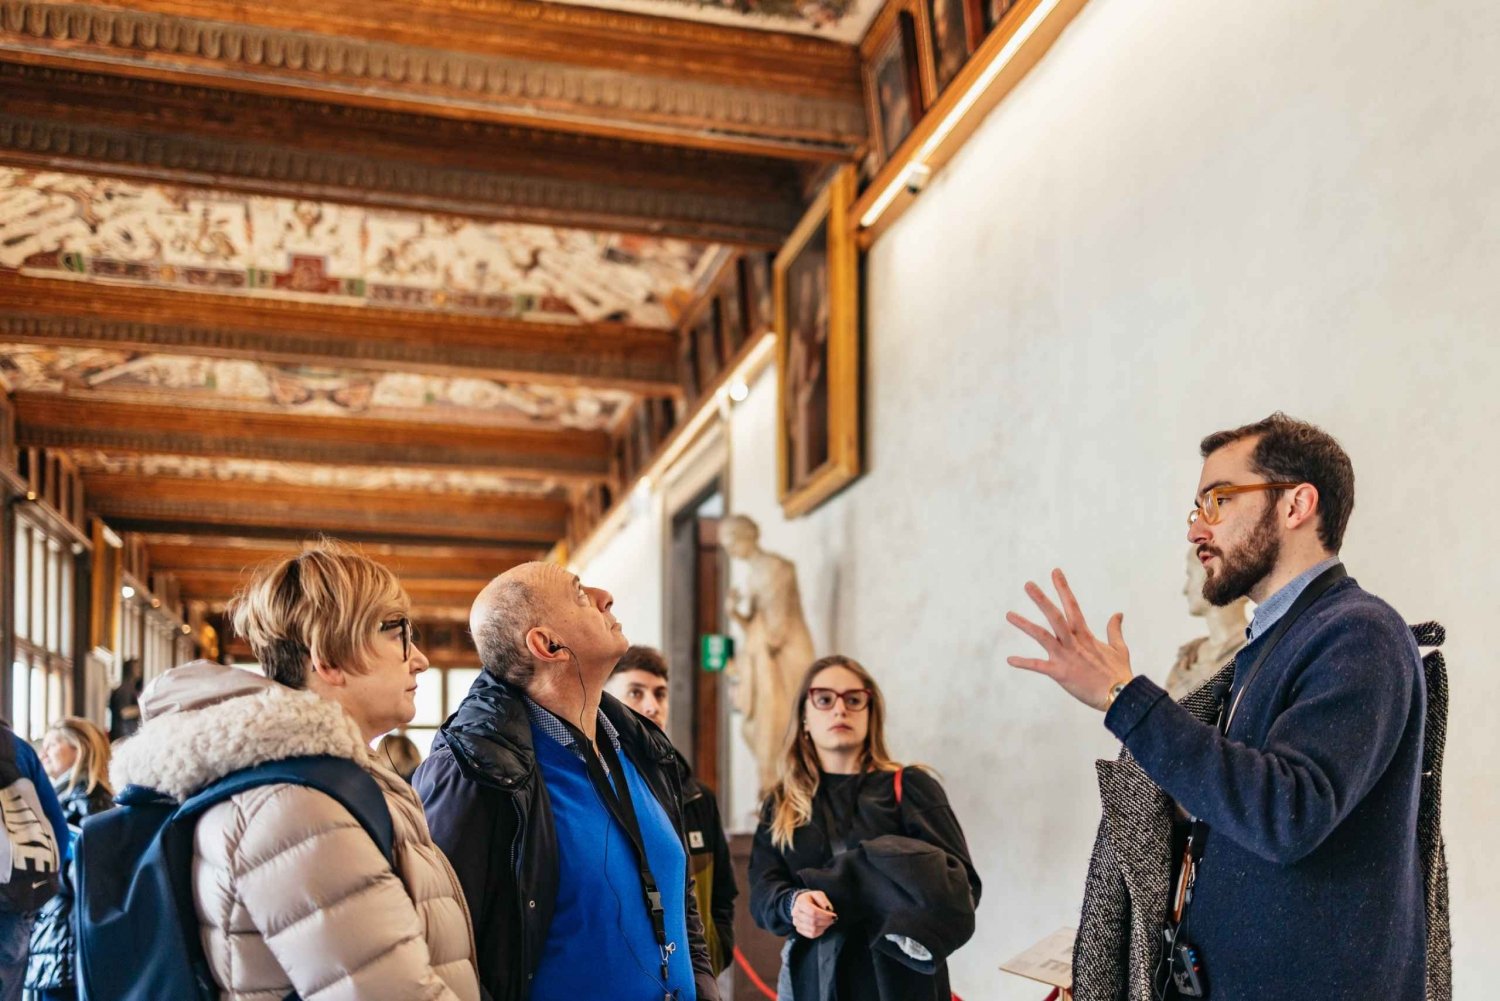 Firenze: Skip-the-line Uffizi Small Group Tour